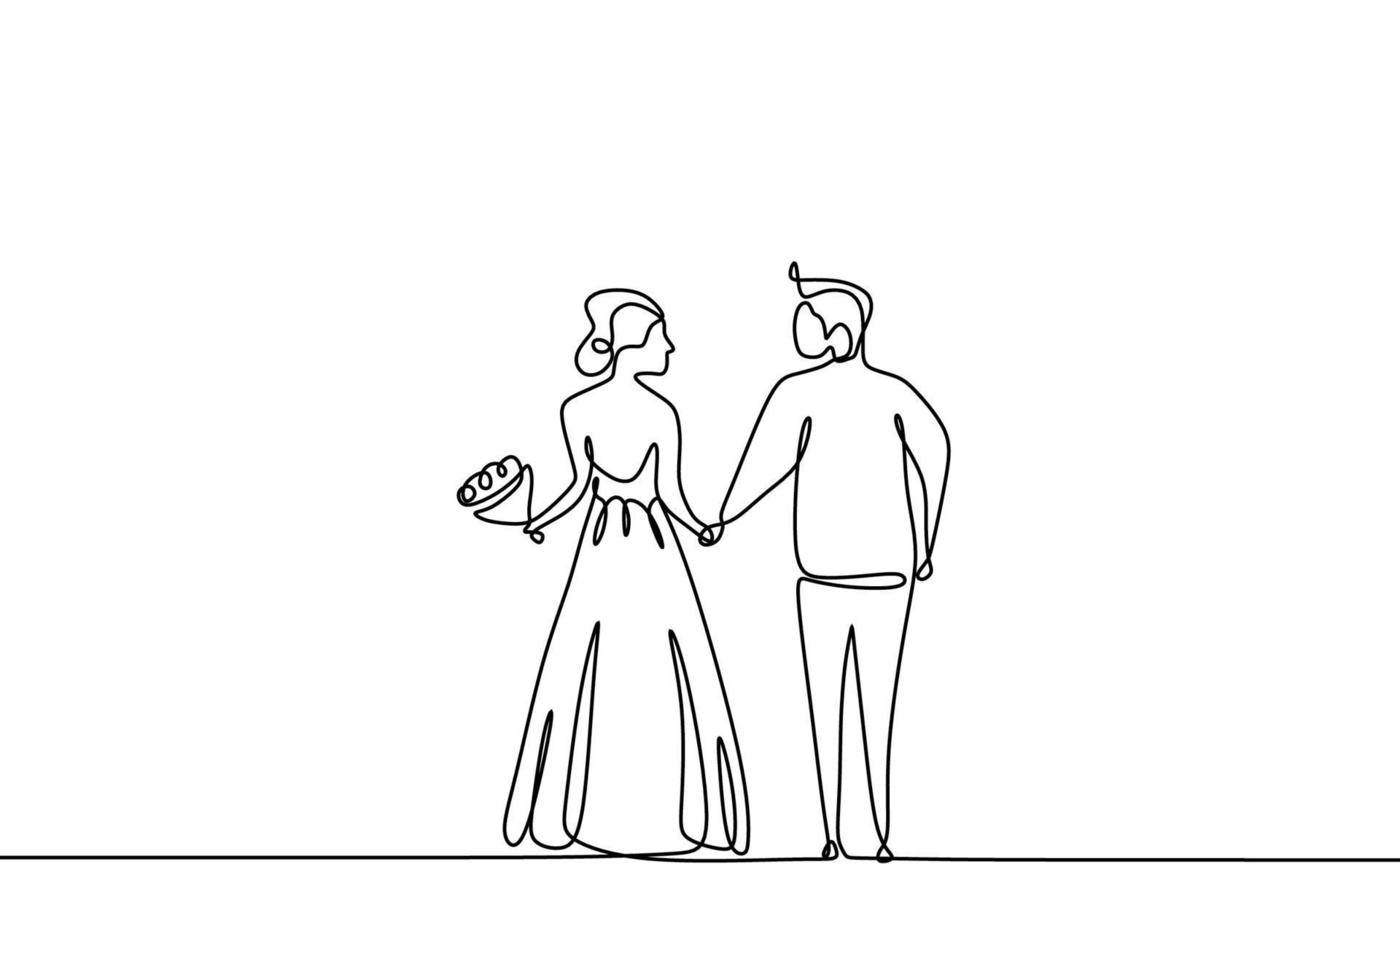 línea de dibujo, de recién casados tomados de la mano antes de la boda. pareja romántica boda una línea. vector